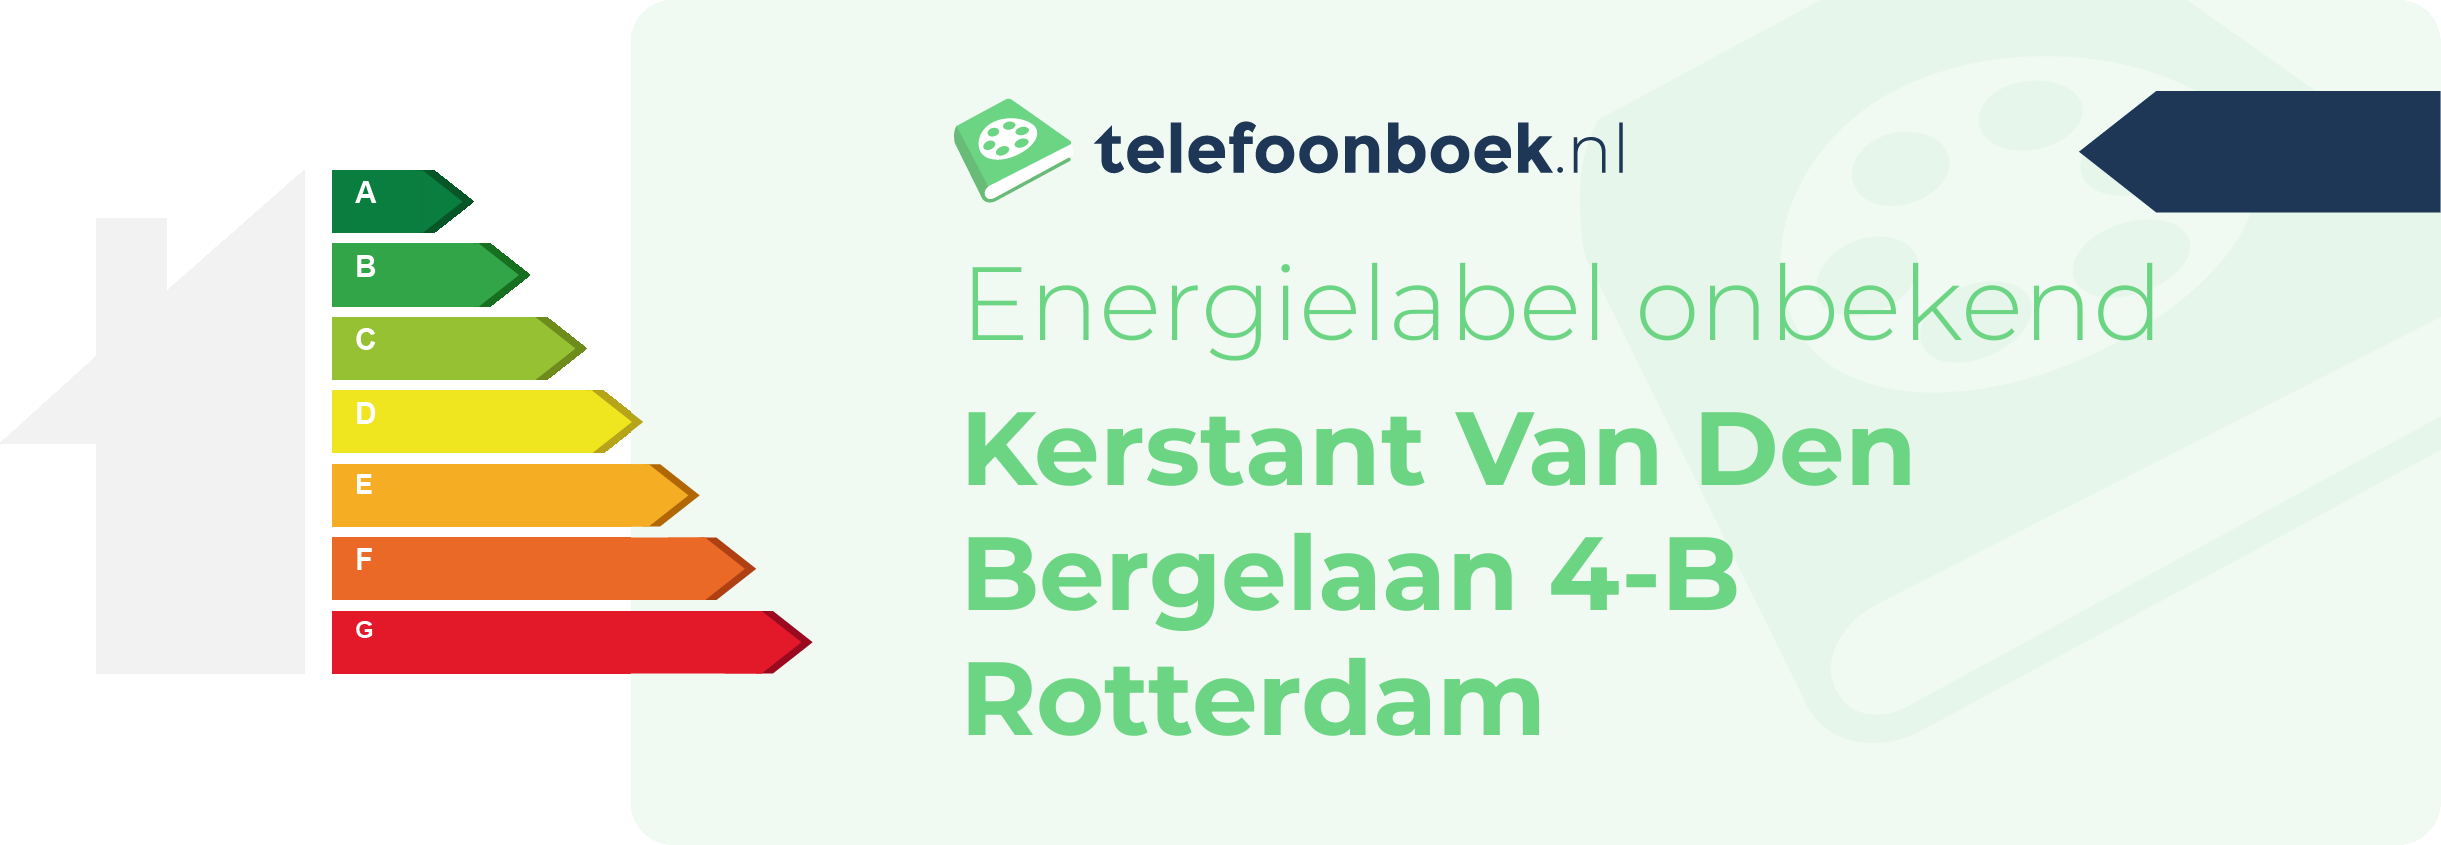 Energielabel Kerstant Van Den Bergelaan 4-B Rotterdam